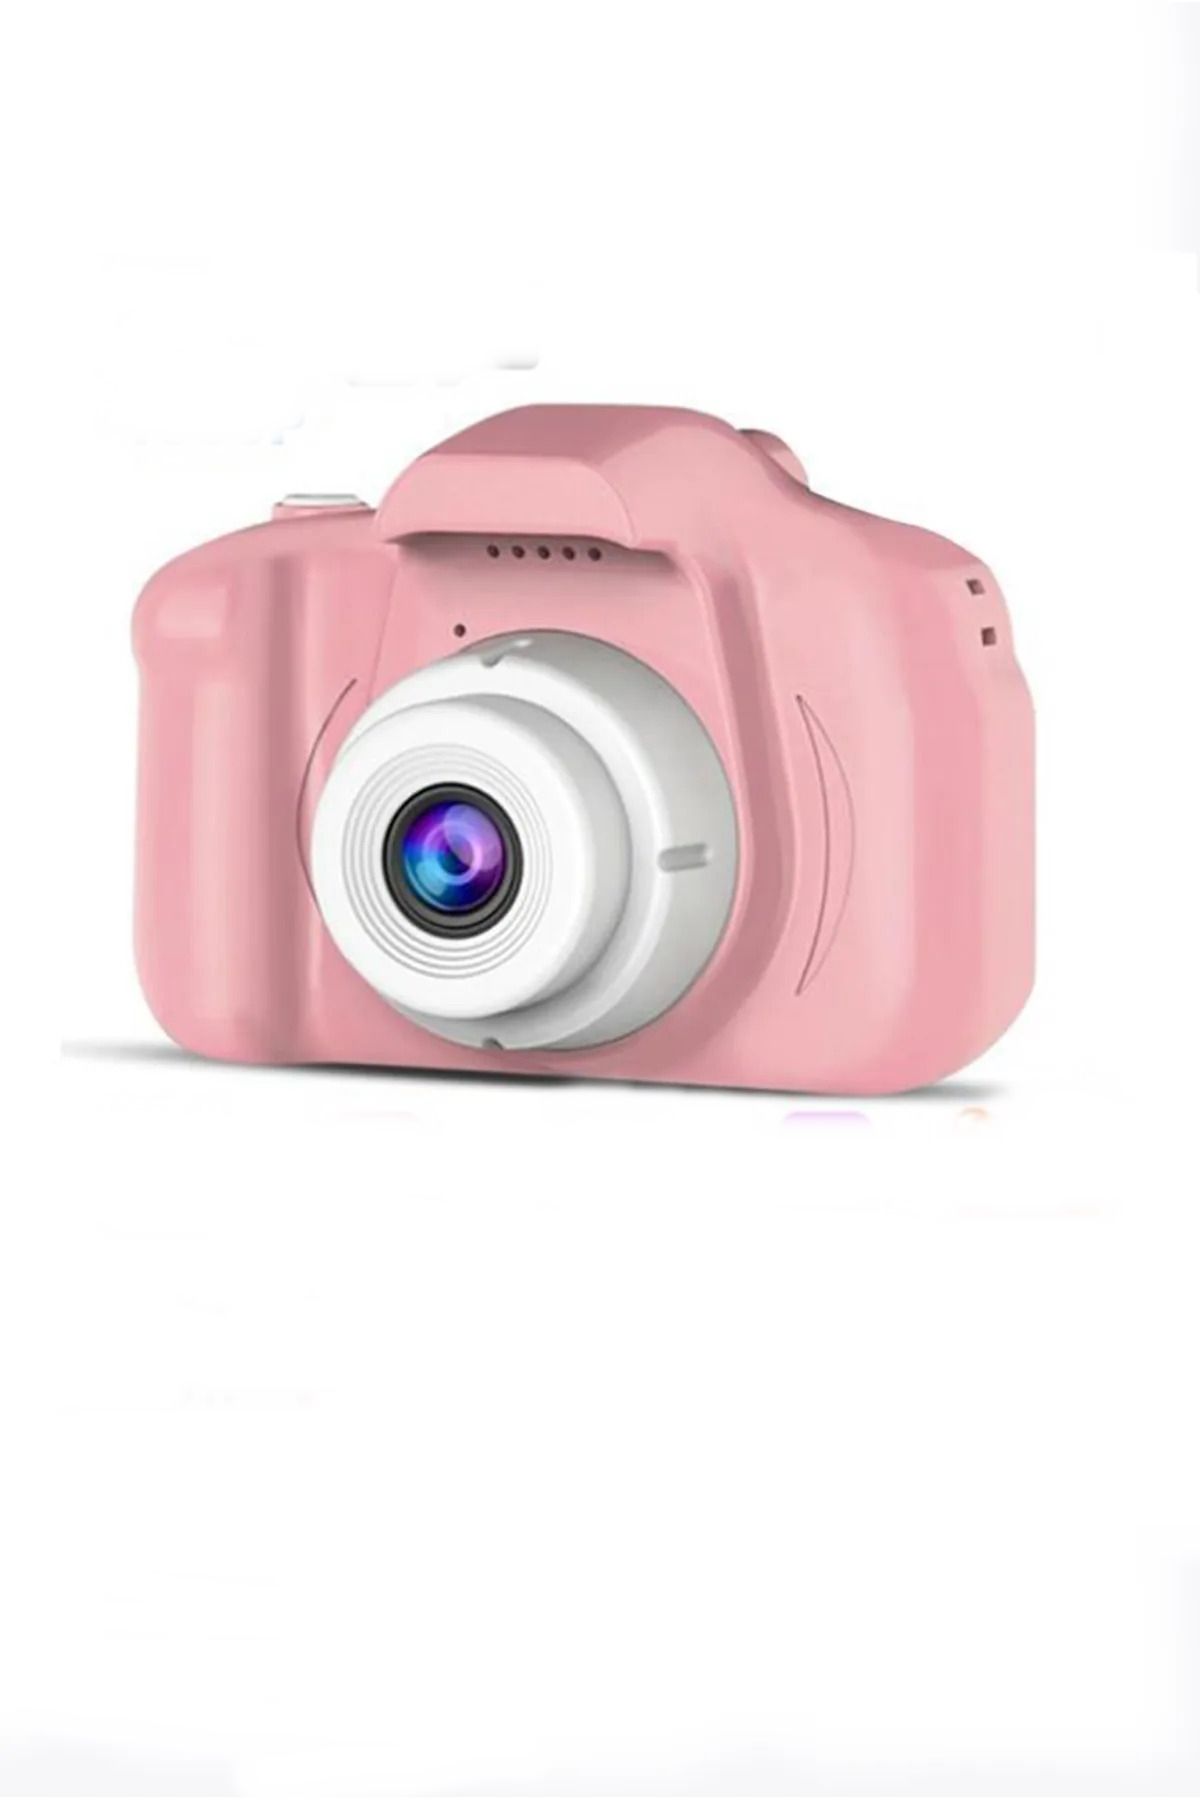 Torima Pembe Renk Mini 1080p Hd Çocuk Kamera Dijital Fotoğraf Makinesi 2.0 Inç Ekran